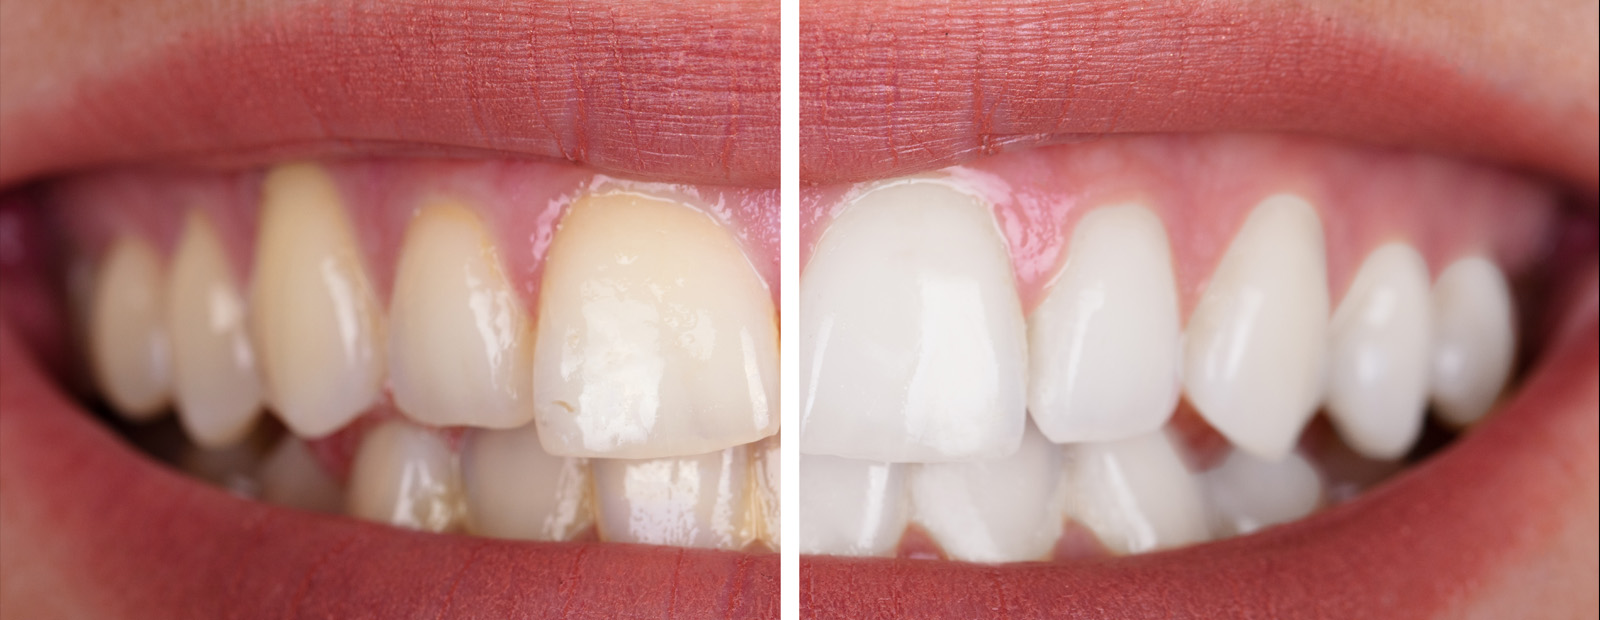 Graue verfärbung zahn Patientenfrage: Graue